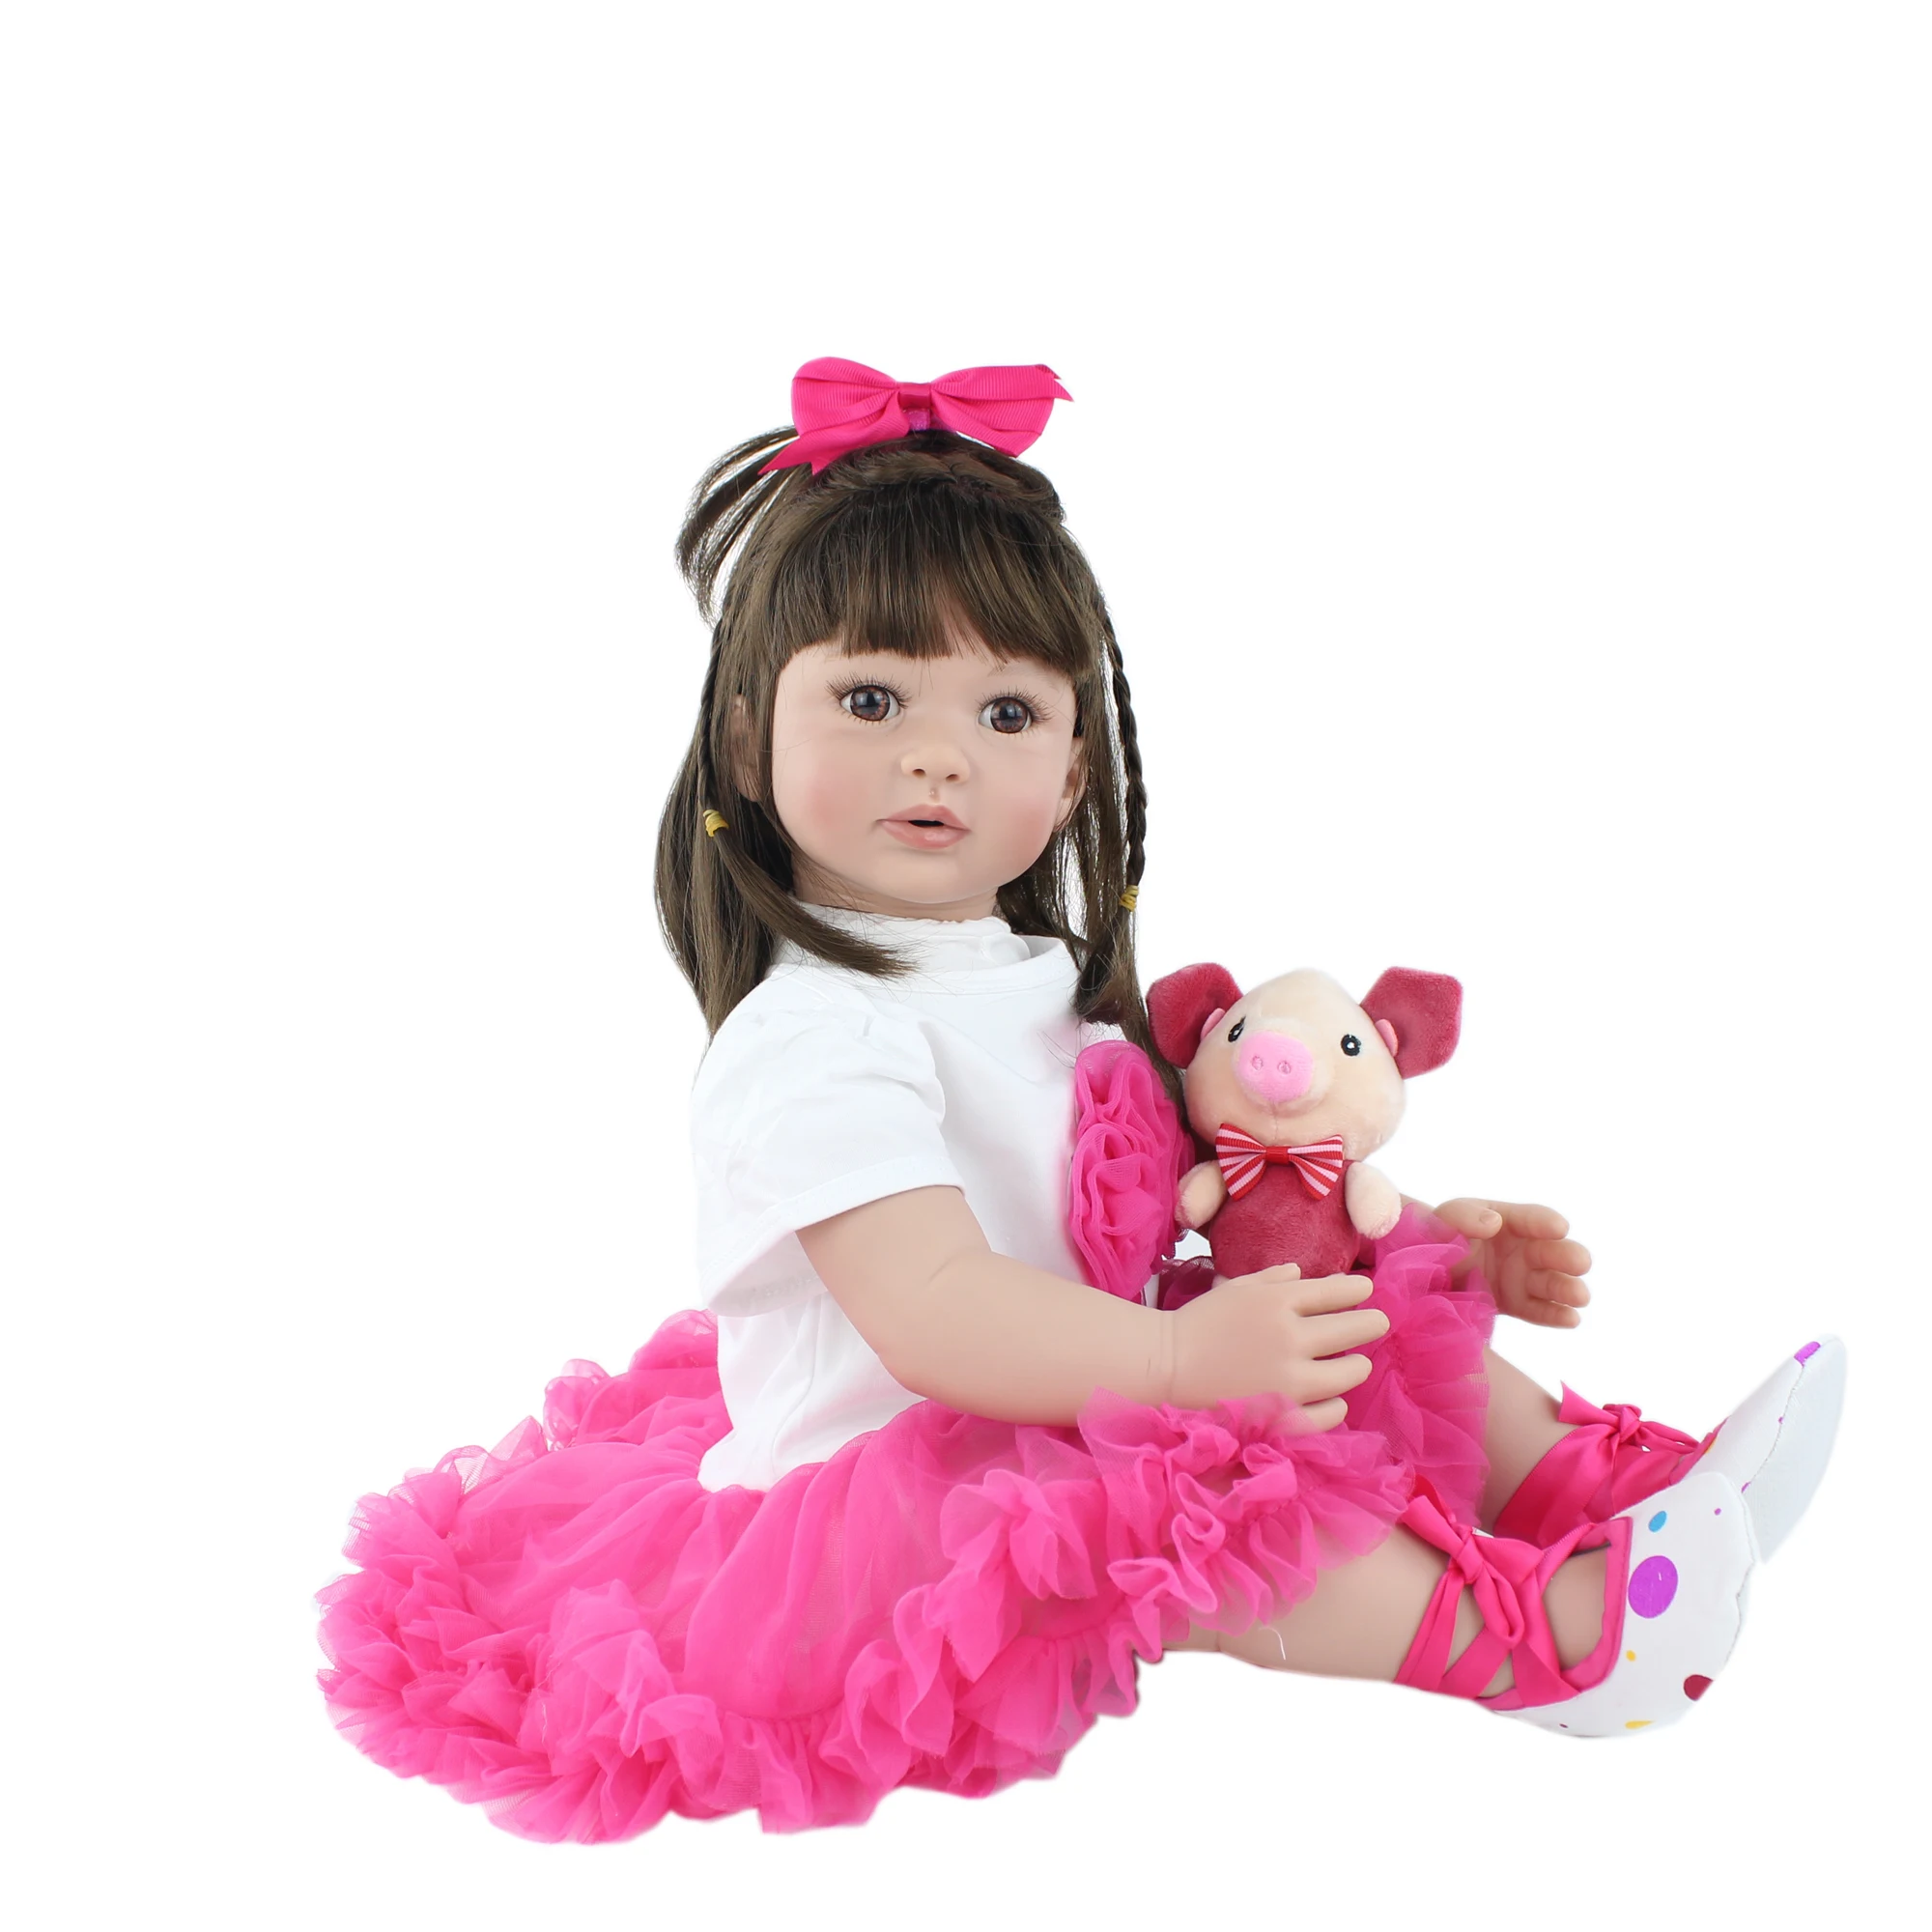 60 см Силиконовые принцессы новорожденные младенцы куклы для детей младенец получивший новую жизнь игрушка для маленькой девочки для детей, детская мода подарок на день рождения игровой домик игрушки